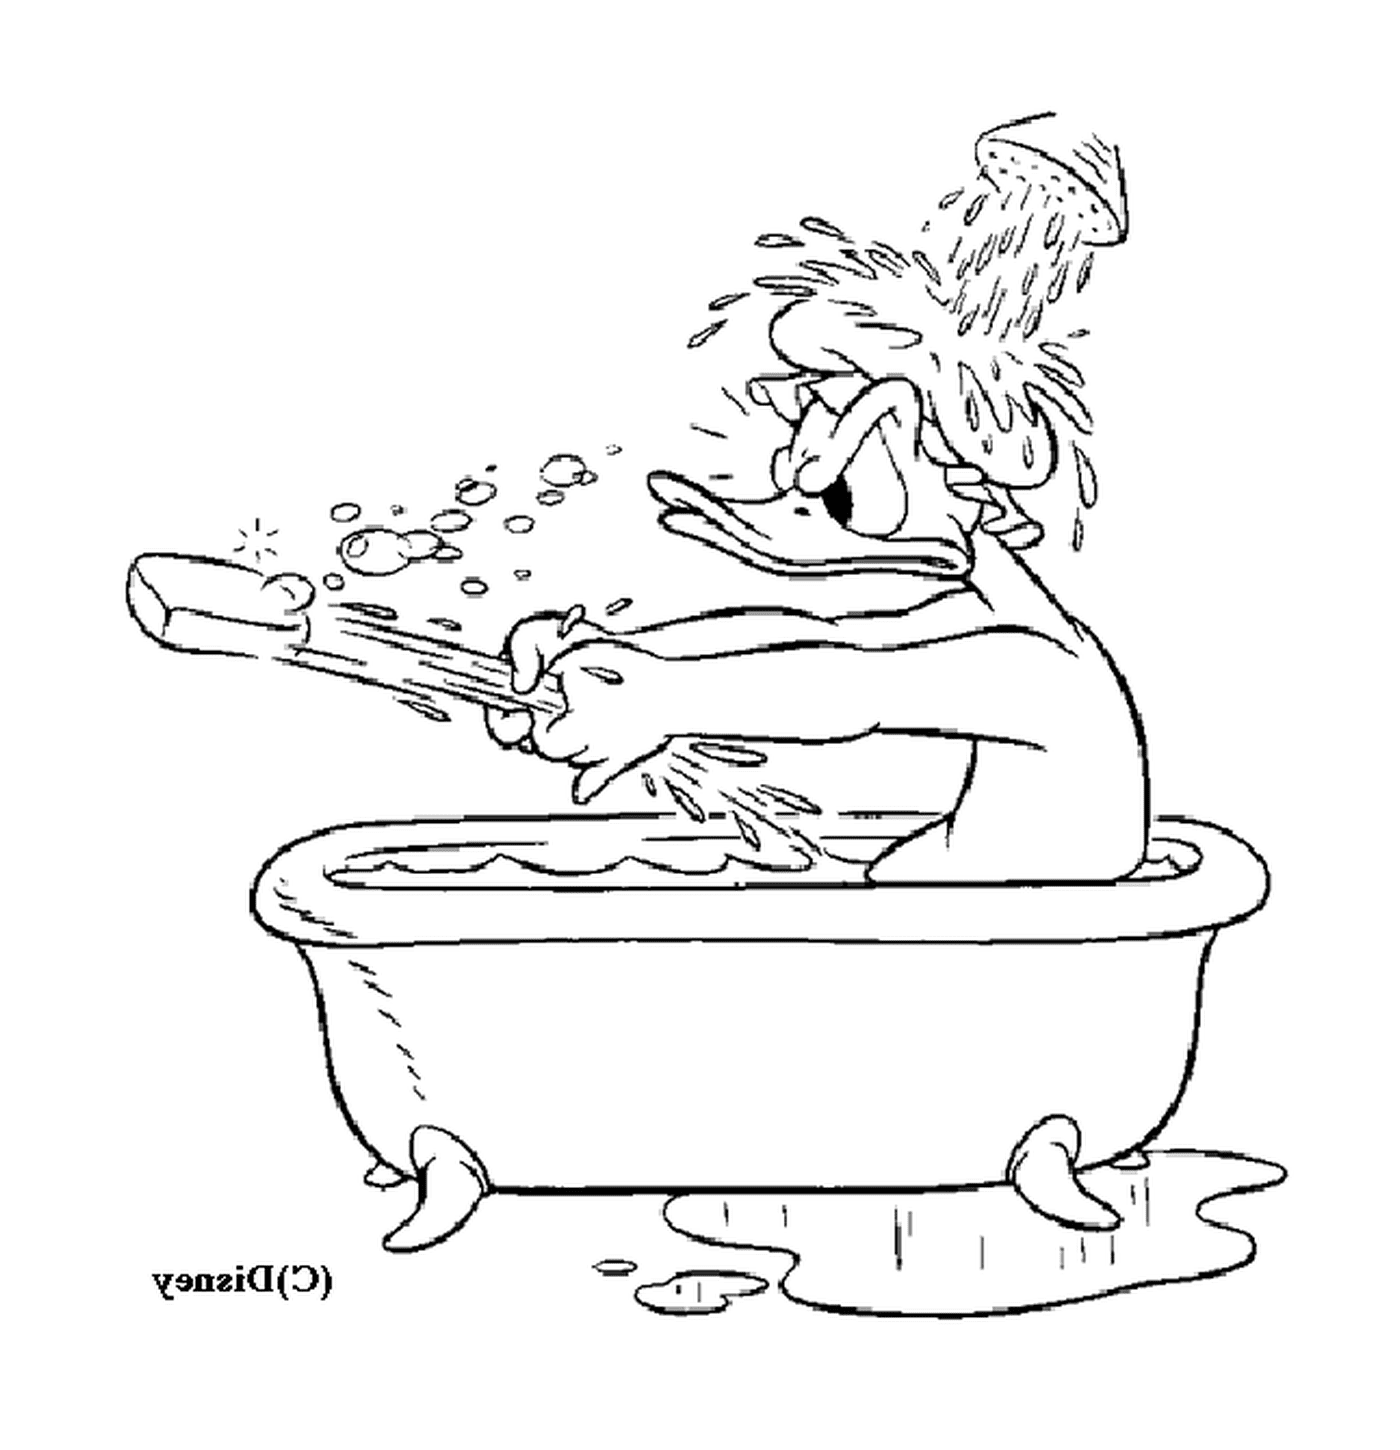  Donald nimmt ein entspannendes Bad 